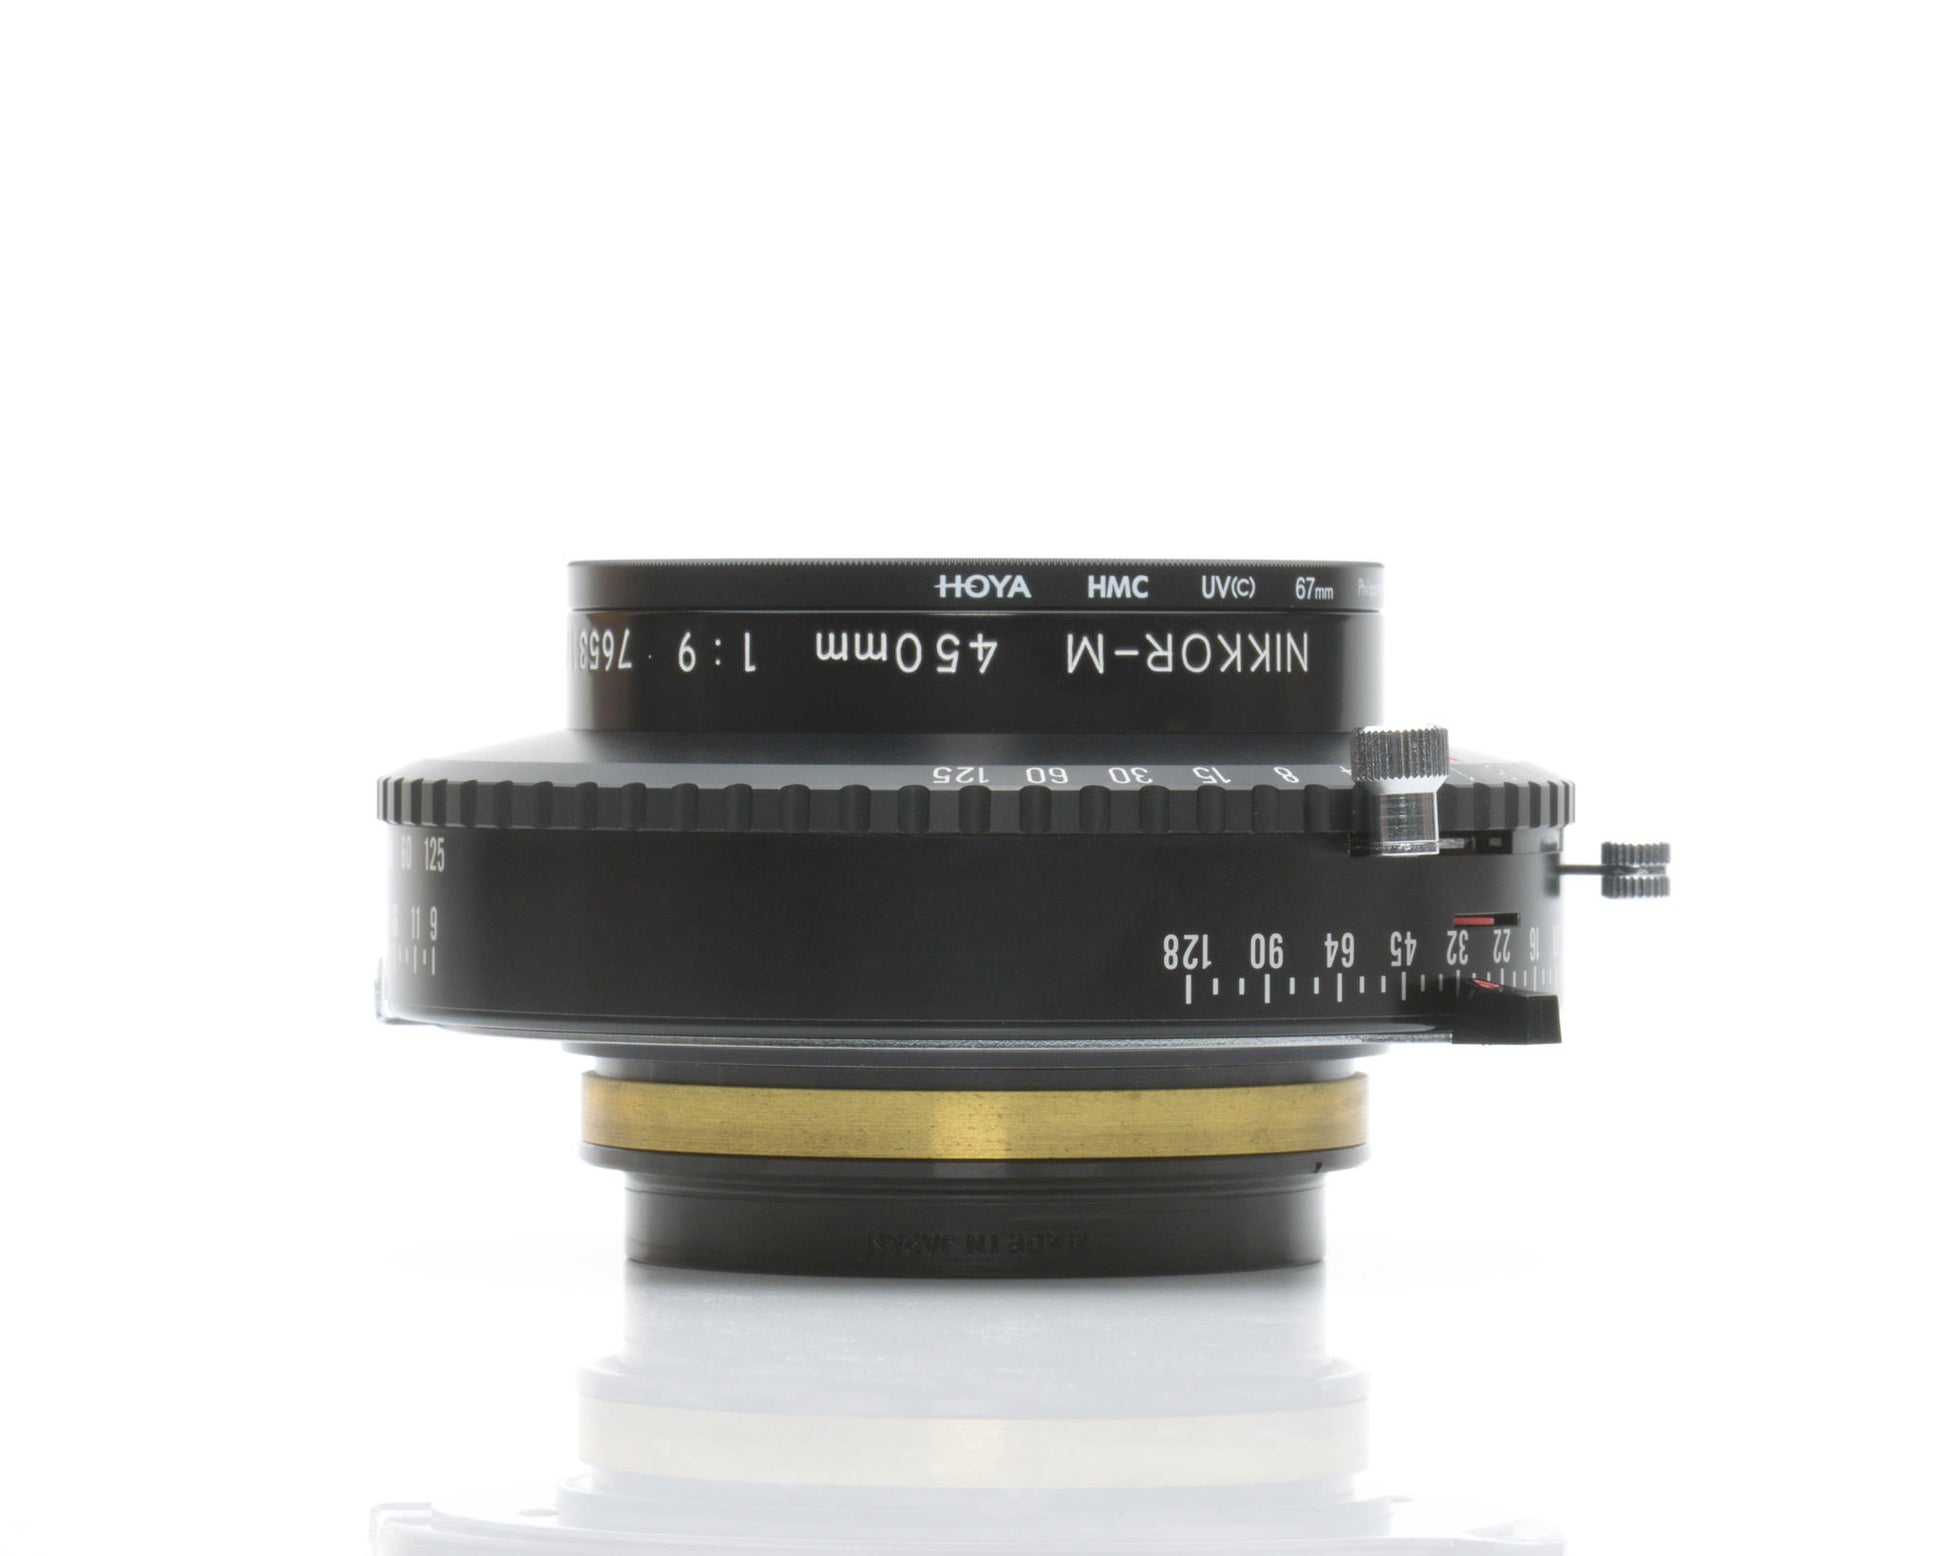 Nikon Nikkor M 450 mm f9 Large Format Lens Copal 3 Shutter